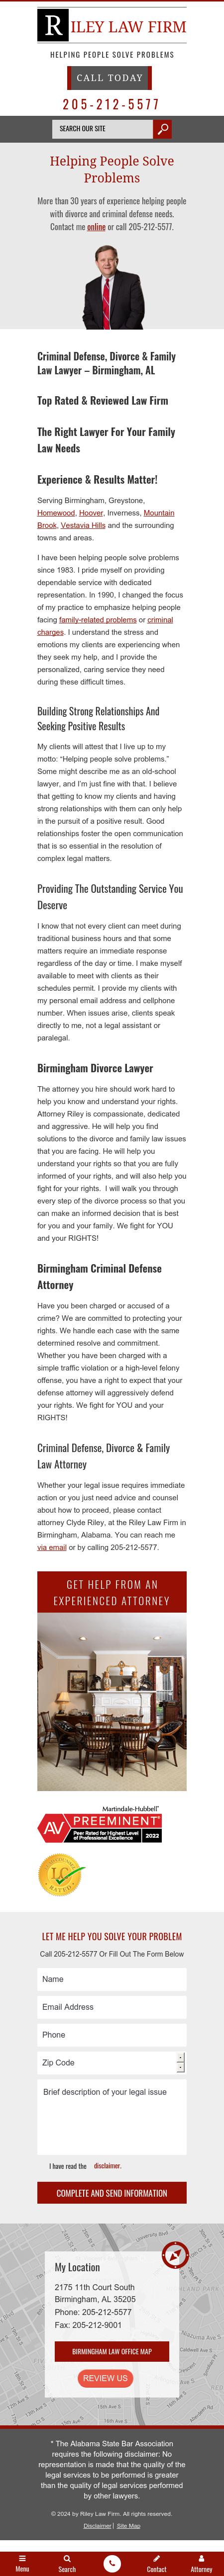 Riley Law Firm - Birmingham AL Lawyers